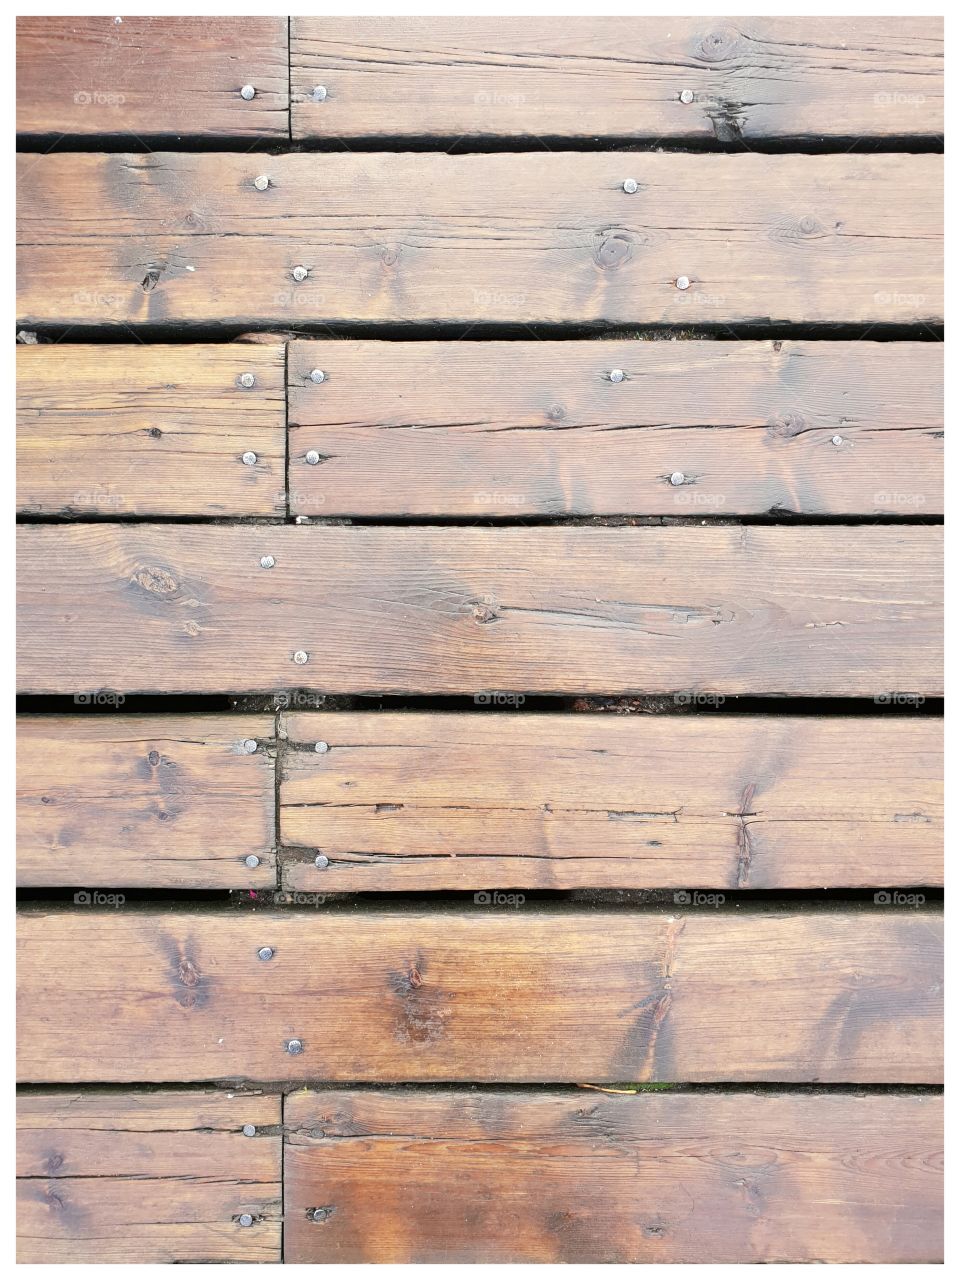 Old wooden floorboards on the docks of Nyhavn, Kopenhagen.